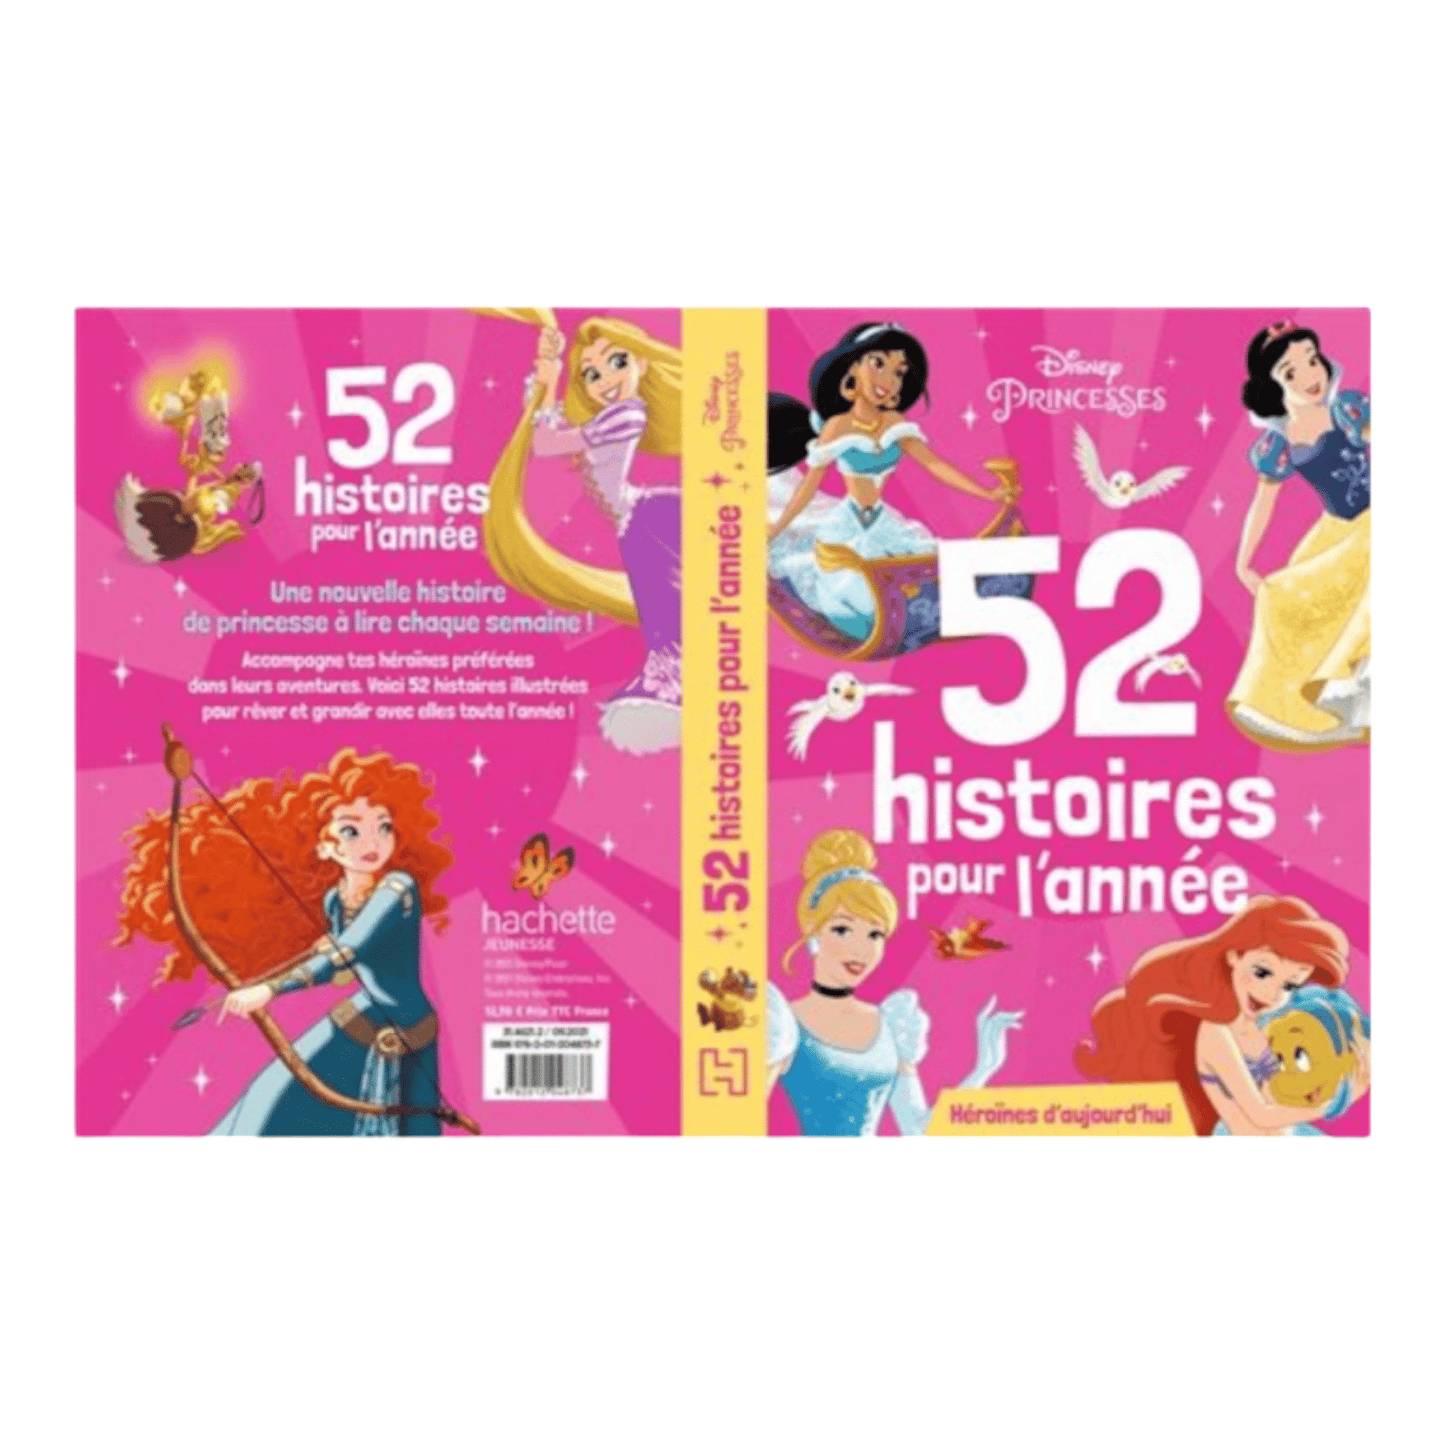 Livre - 52 Histoires pour l'année - Héroïnes d'aujourd'hui - Princesses - Disney - Hachette Jeunesse J'M T Créa